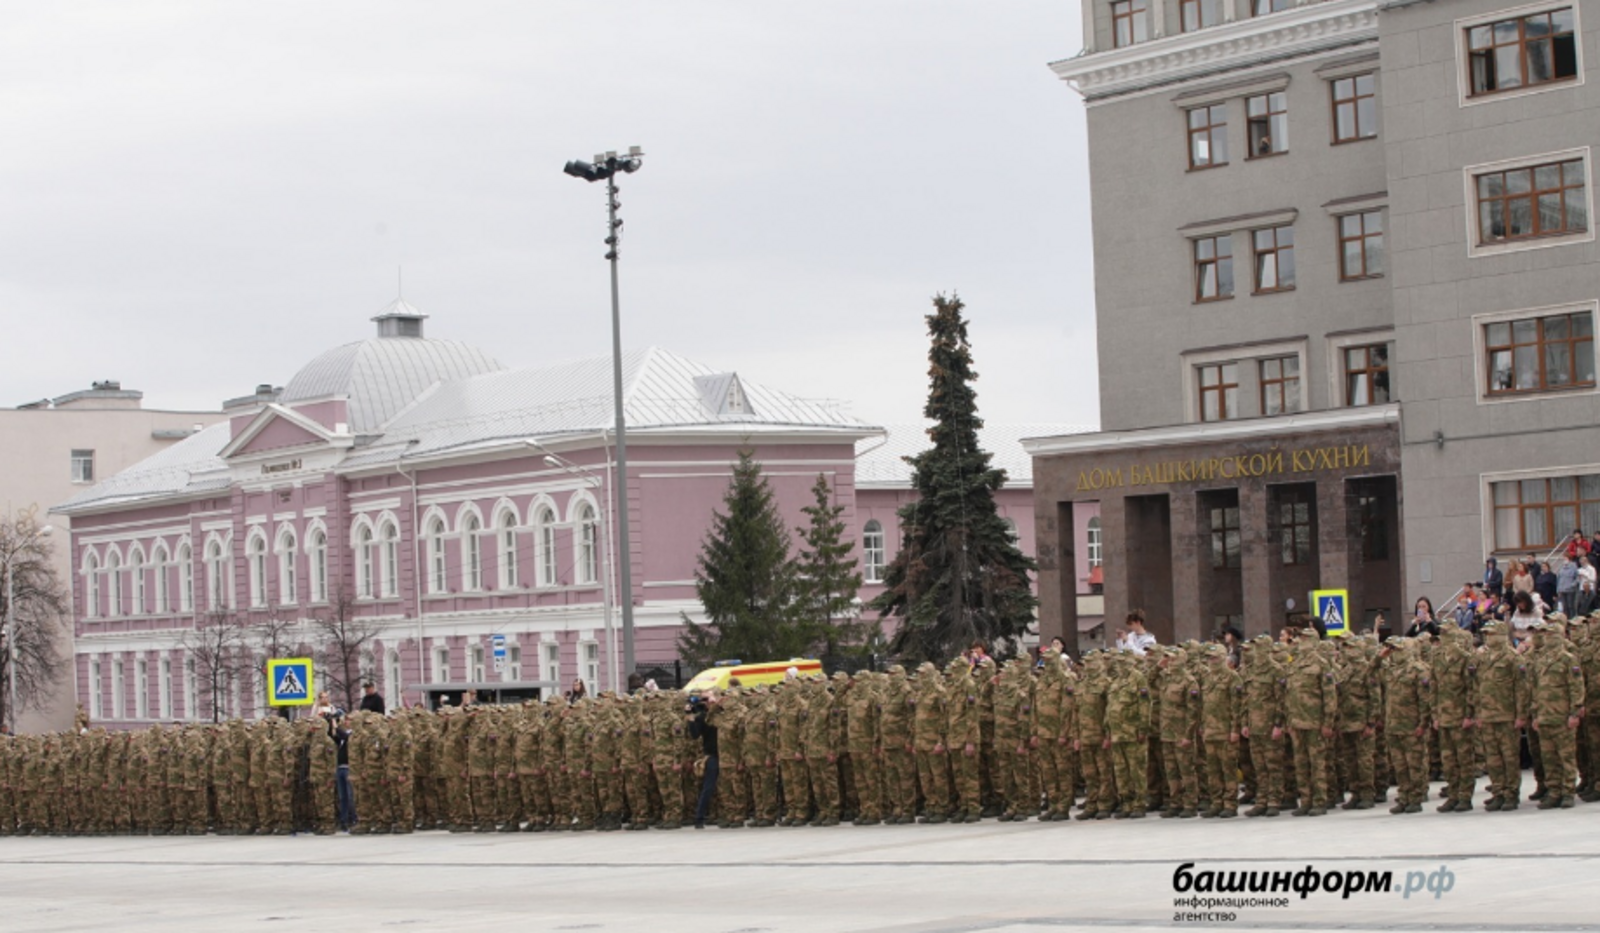 Батальон имени Даяна Мурзина отправился из Уфы к месту боевого слаживания